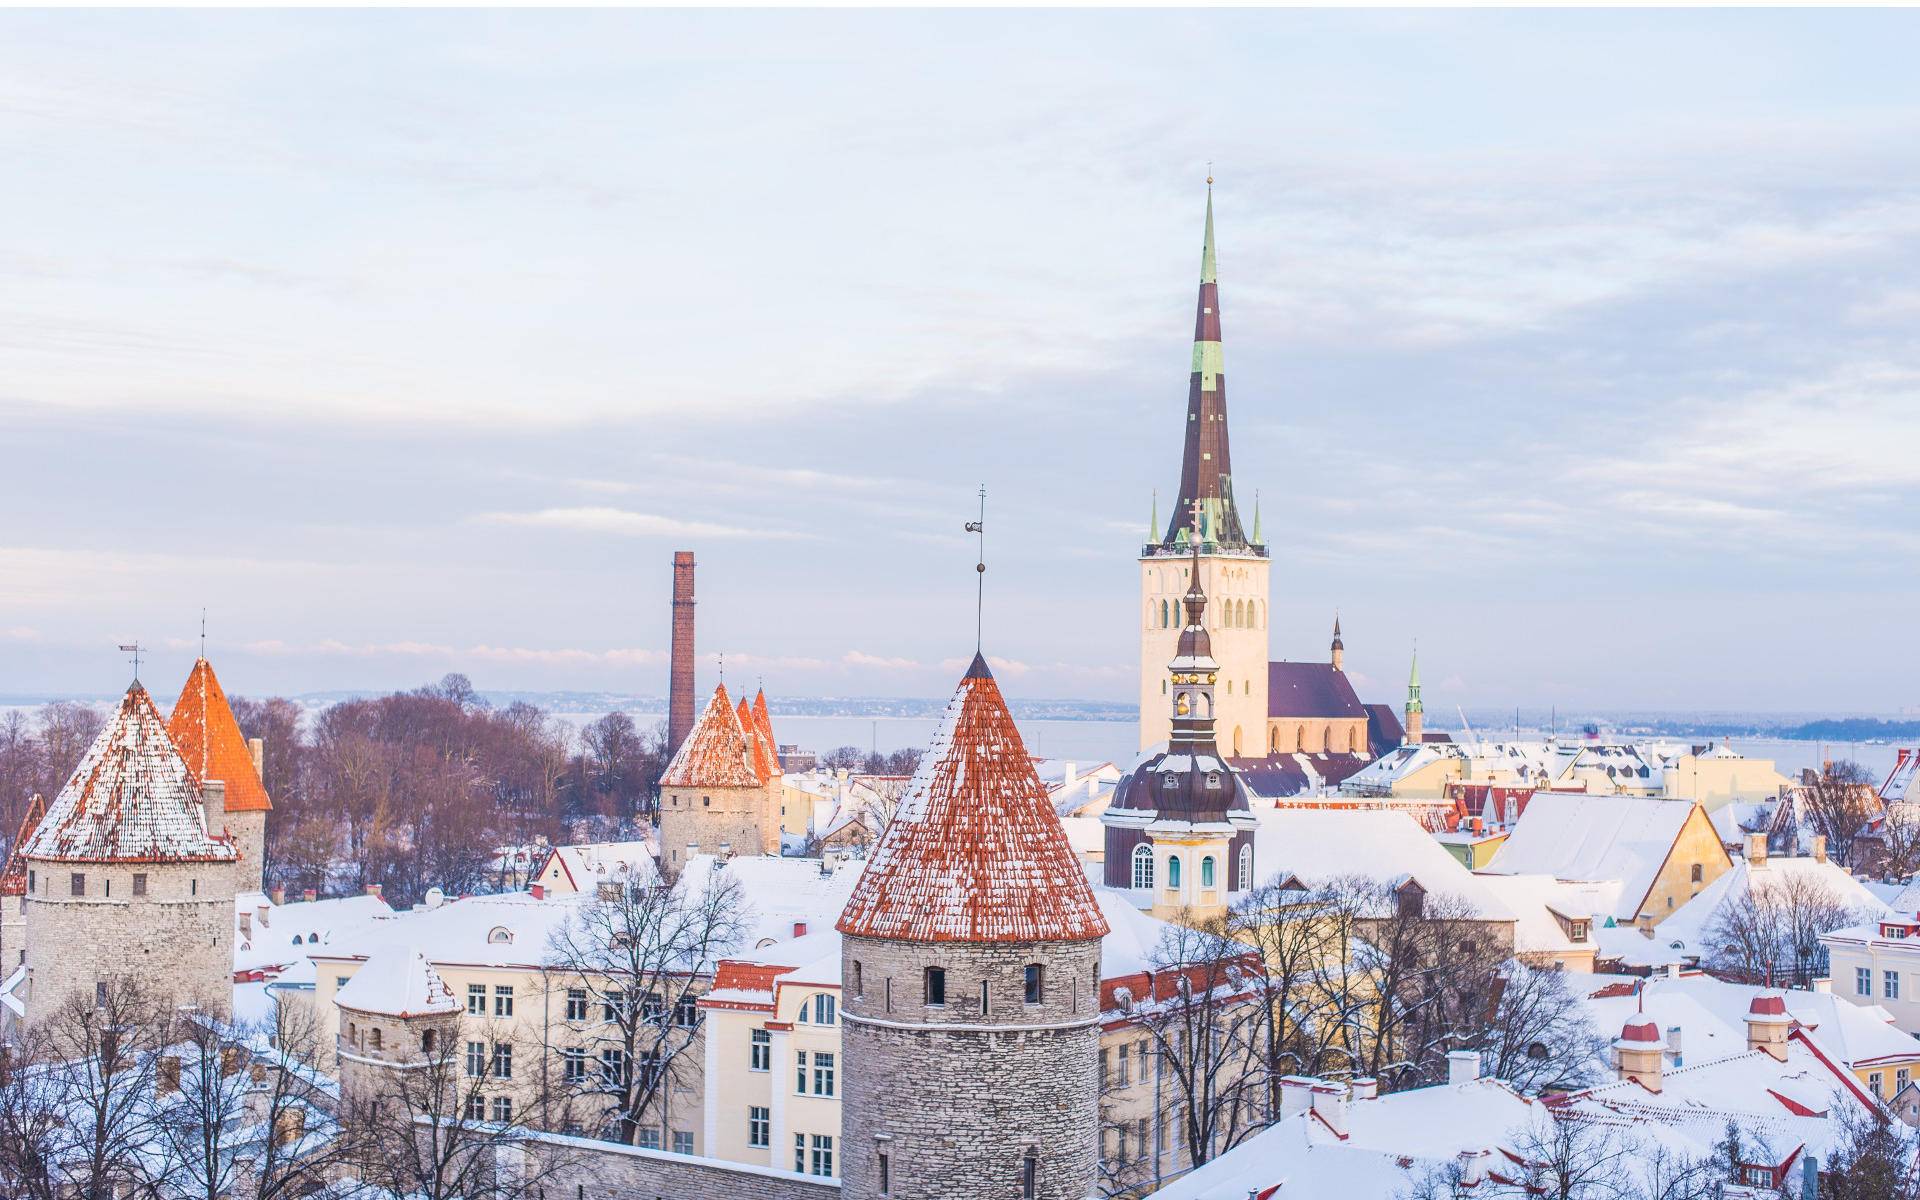 Tallinns Sehenswürdigkeiten: Eine Zeitreise